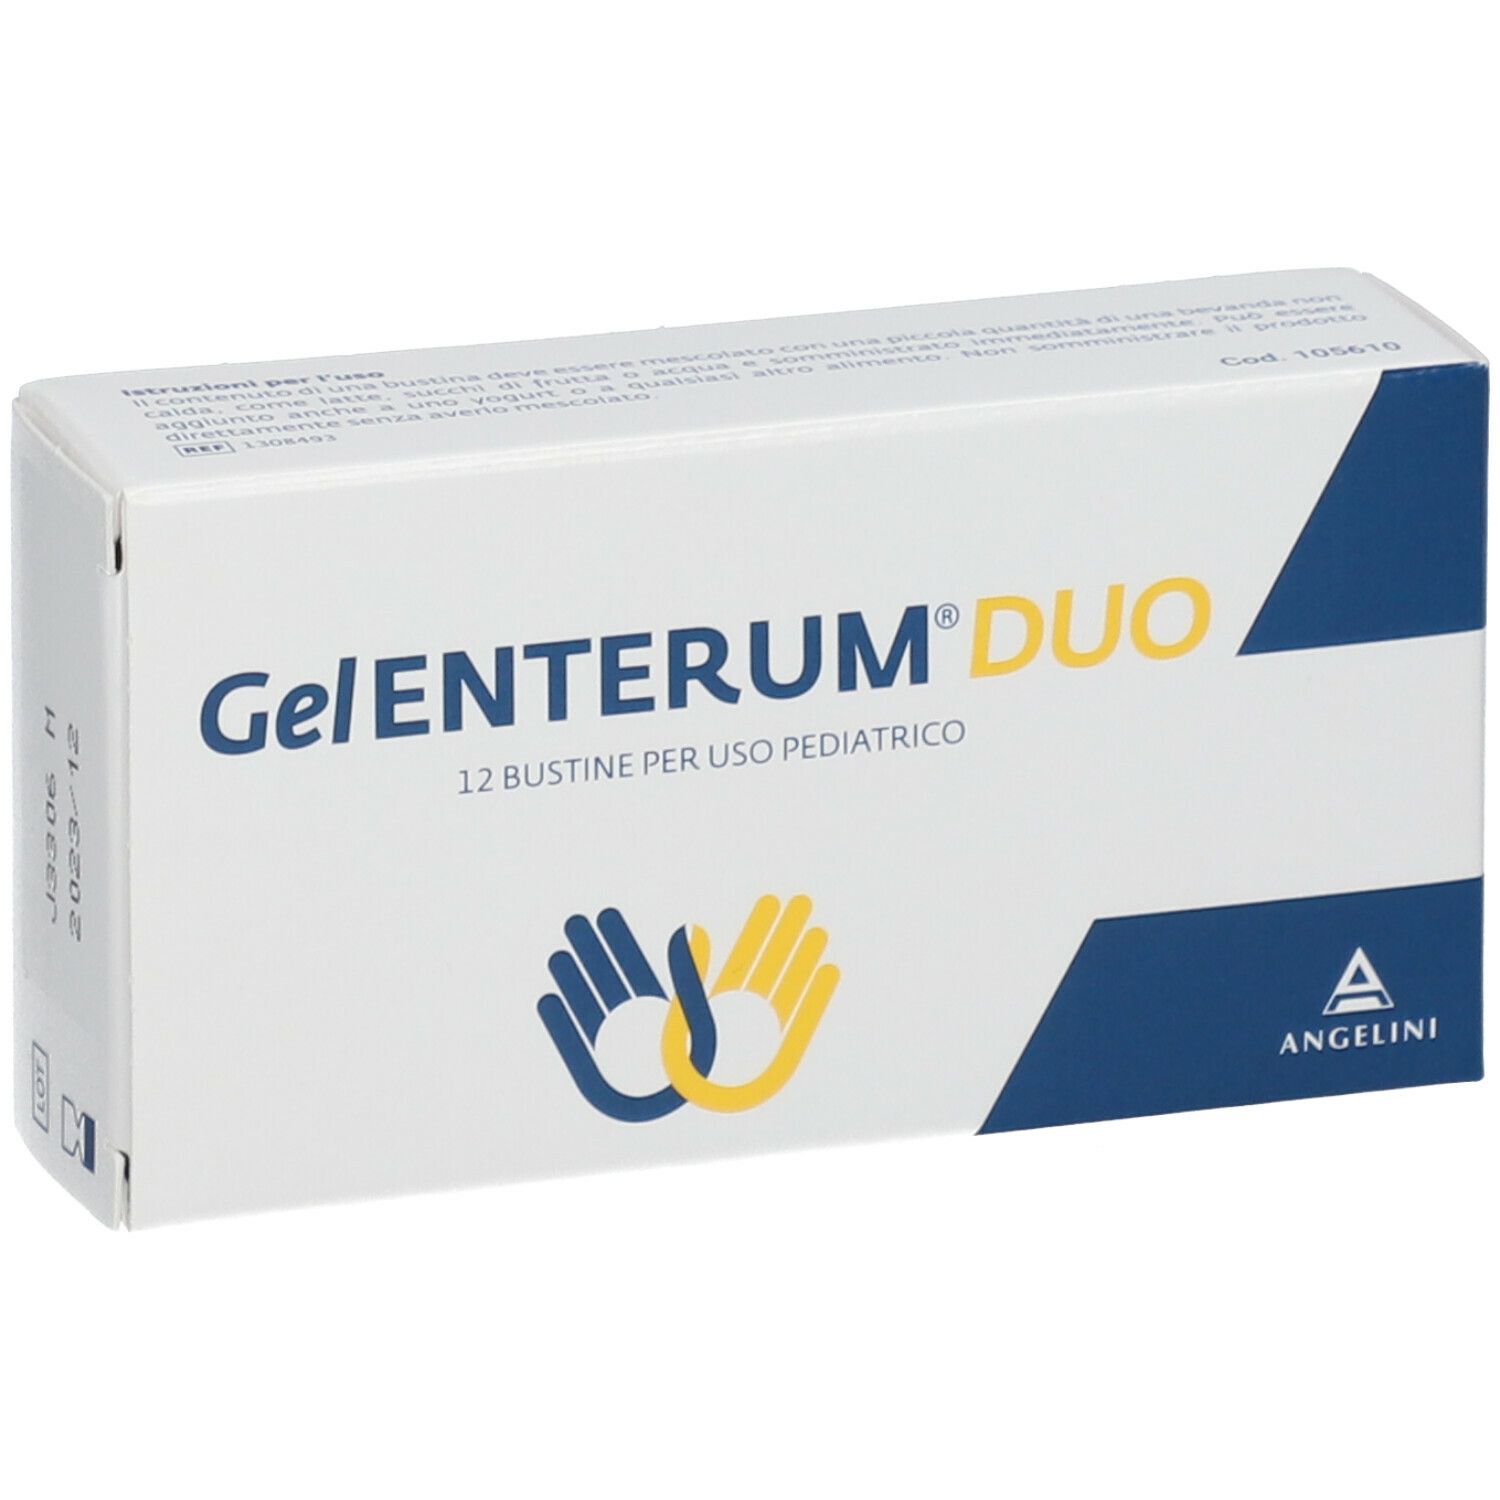 Gel Enterum Duo